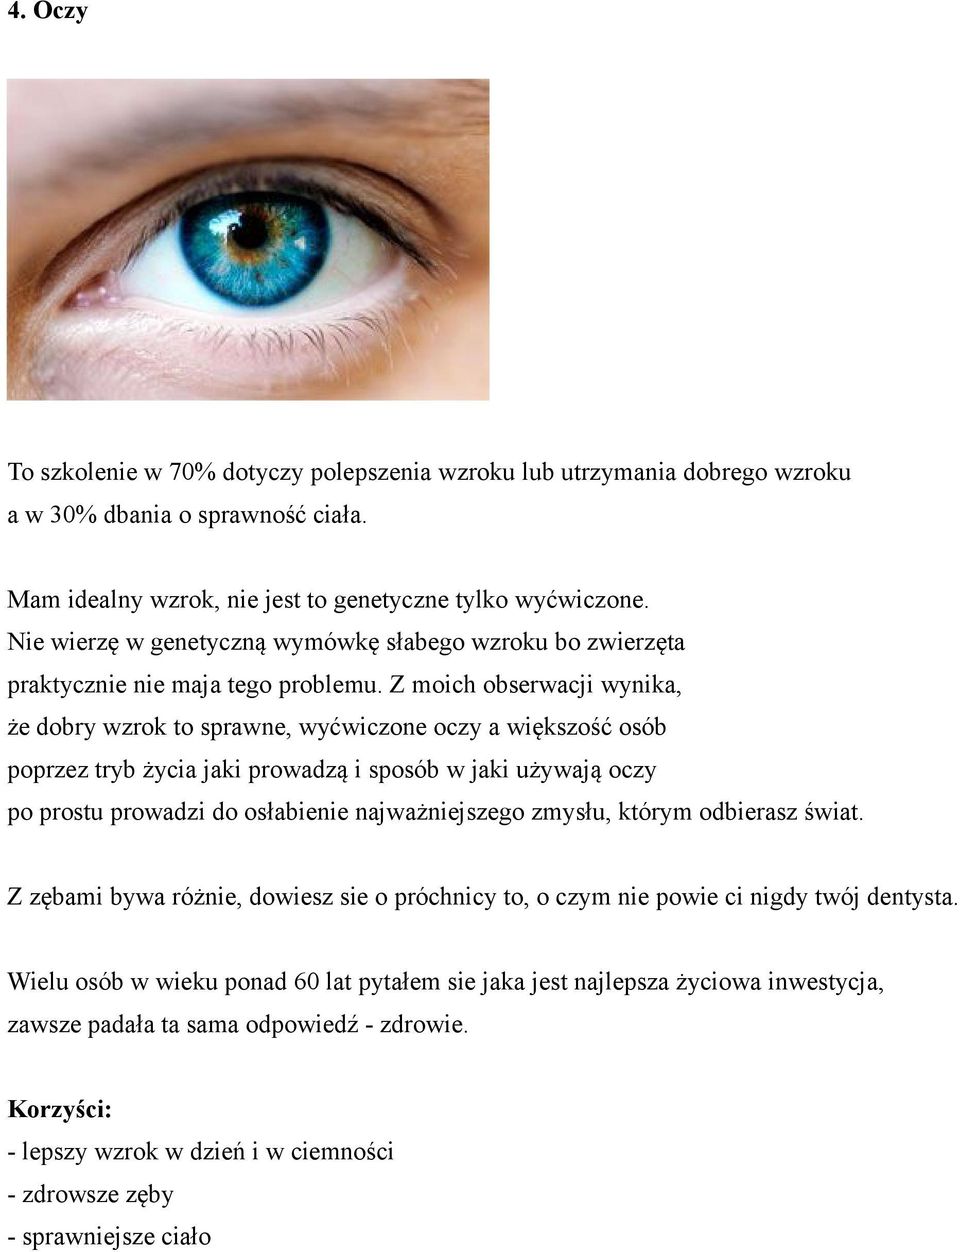 Z moich obserwacji wynika, że dobry wzrok to sprawne, wyćwiczone oczy a większość osób poprzez tryb życia jaki prowadzą i sposób w jaki używają oczy po prostu prowadzi do osłabienie najważniejszego